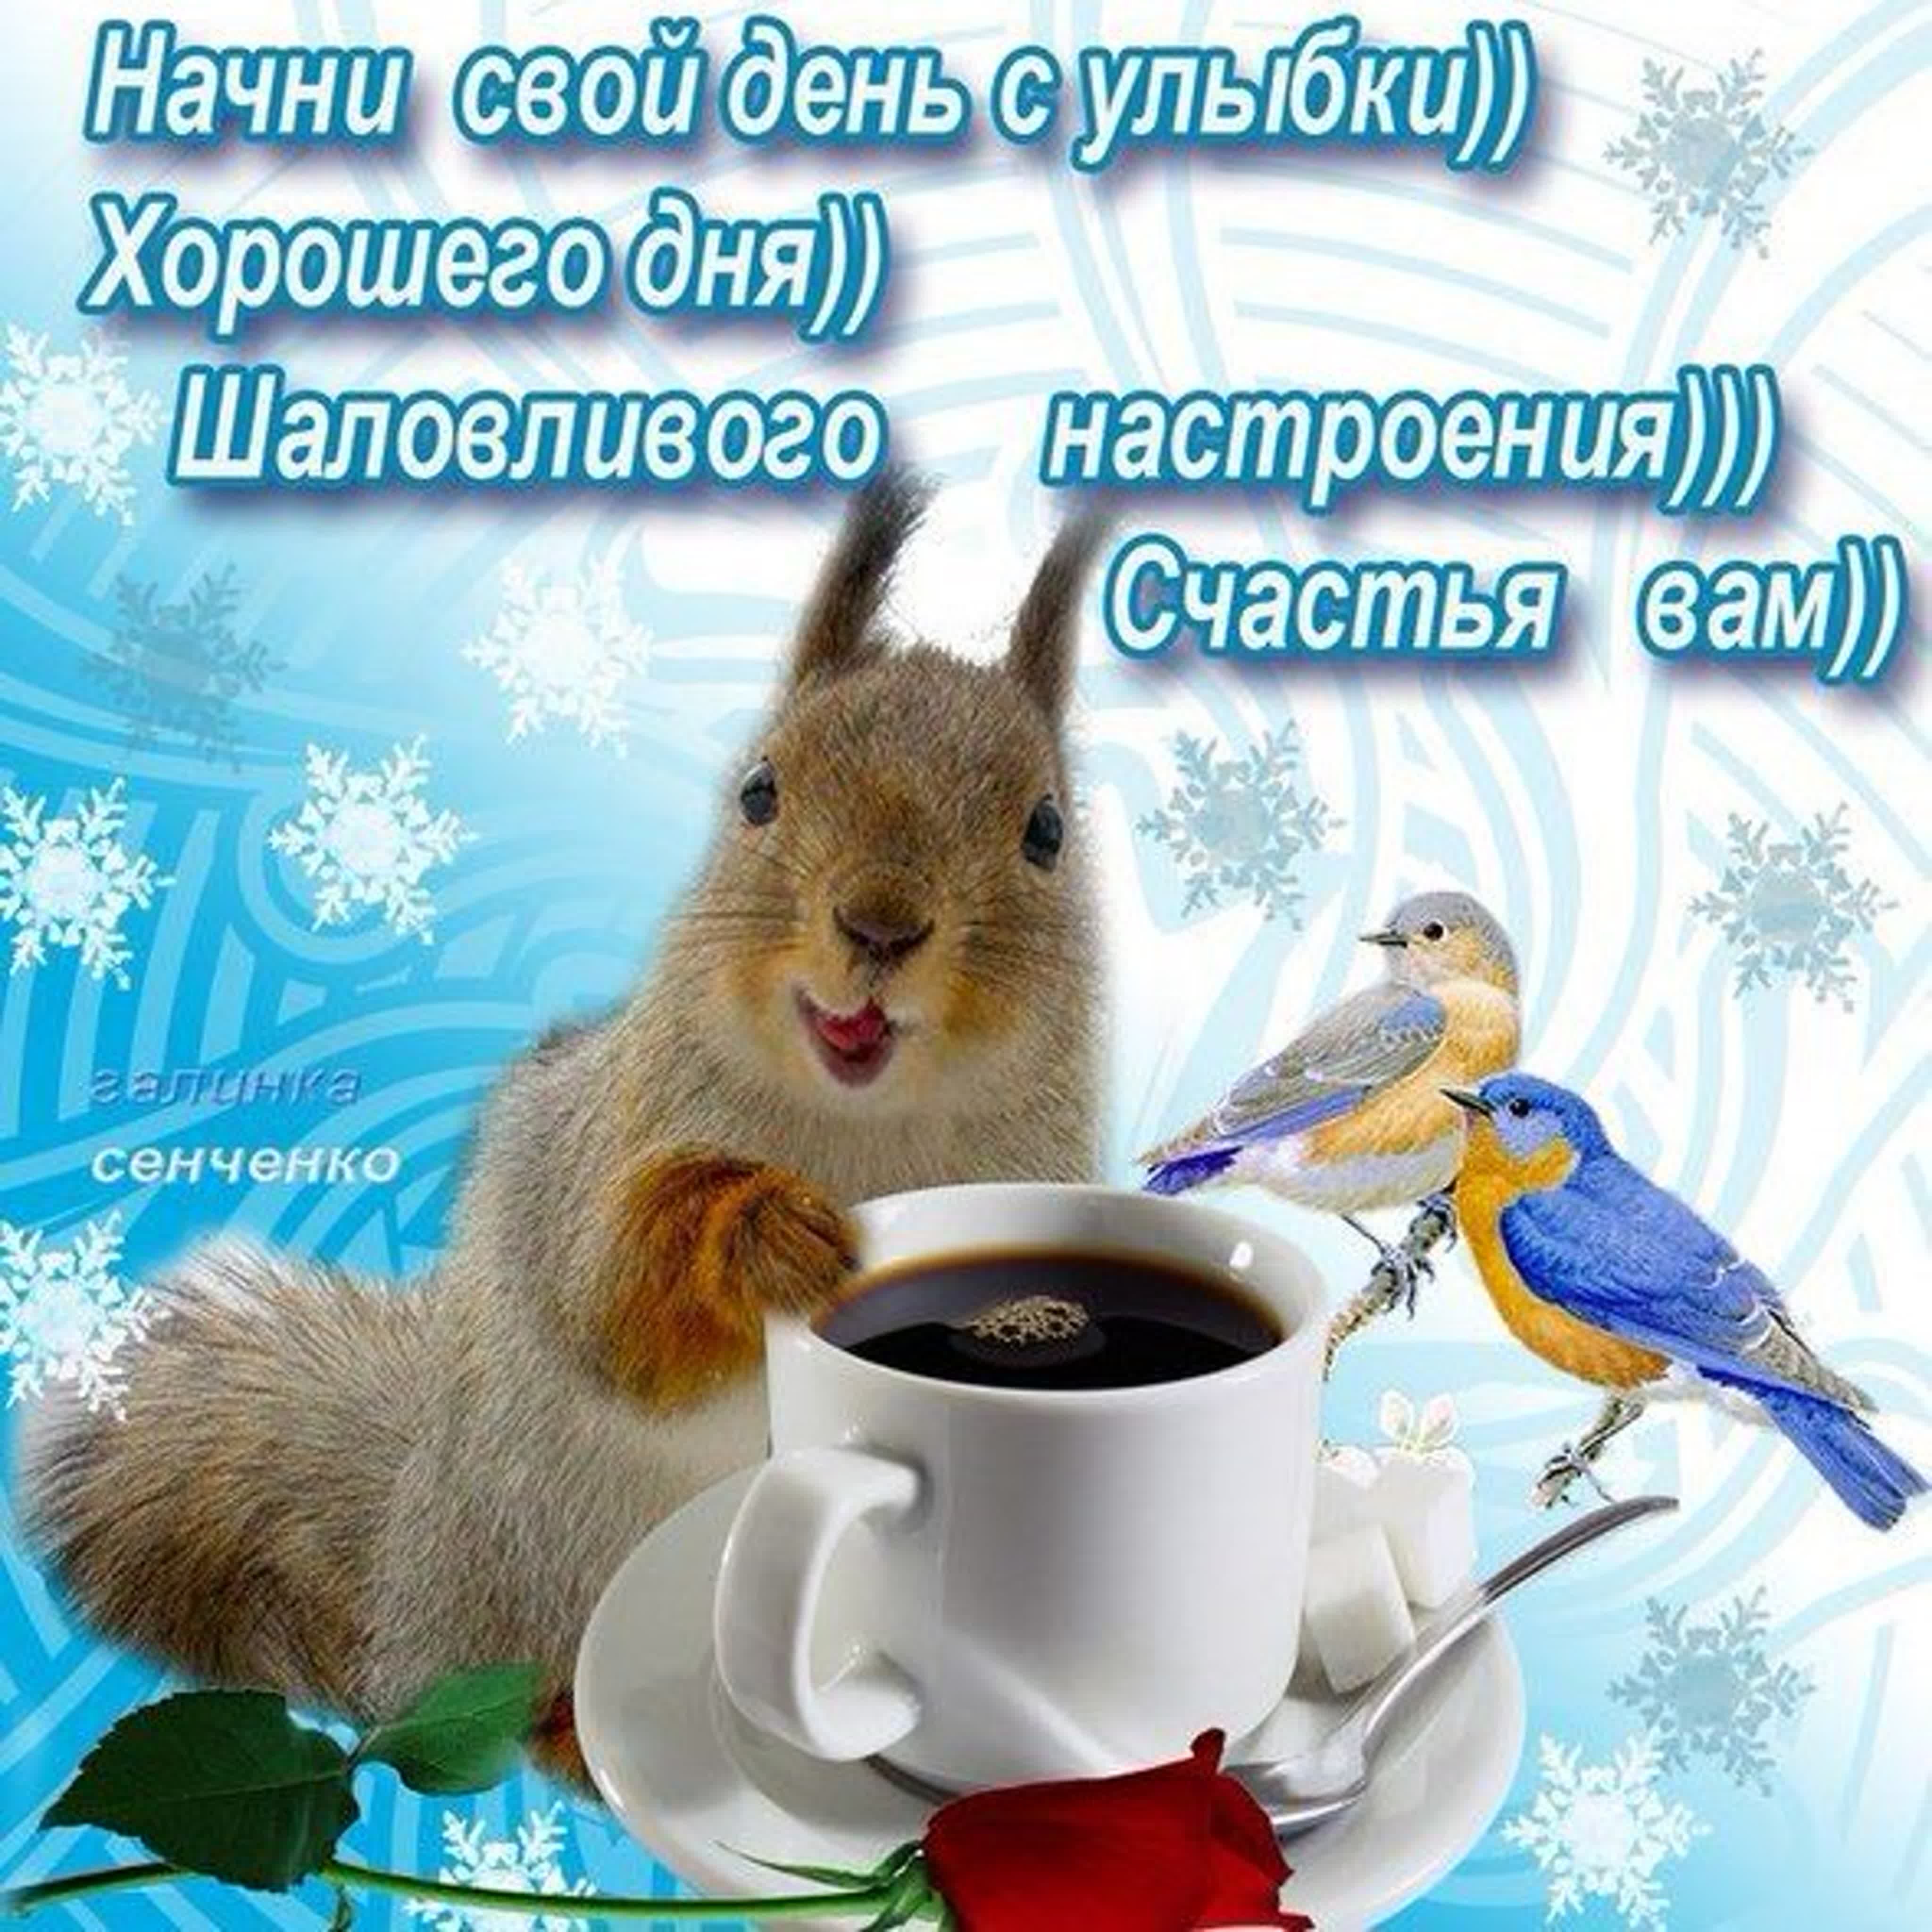 Добрым утром днем зимы картинки. Зимние поздравления с добрым утром. Зимние открытки поздравления с добрым утром. Пожелания доброго зимнего утра. Доброго зимнего утра и хорошего дня.